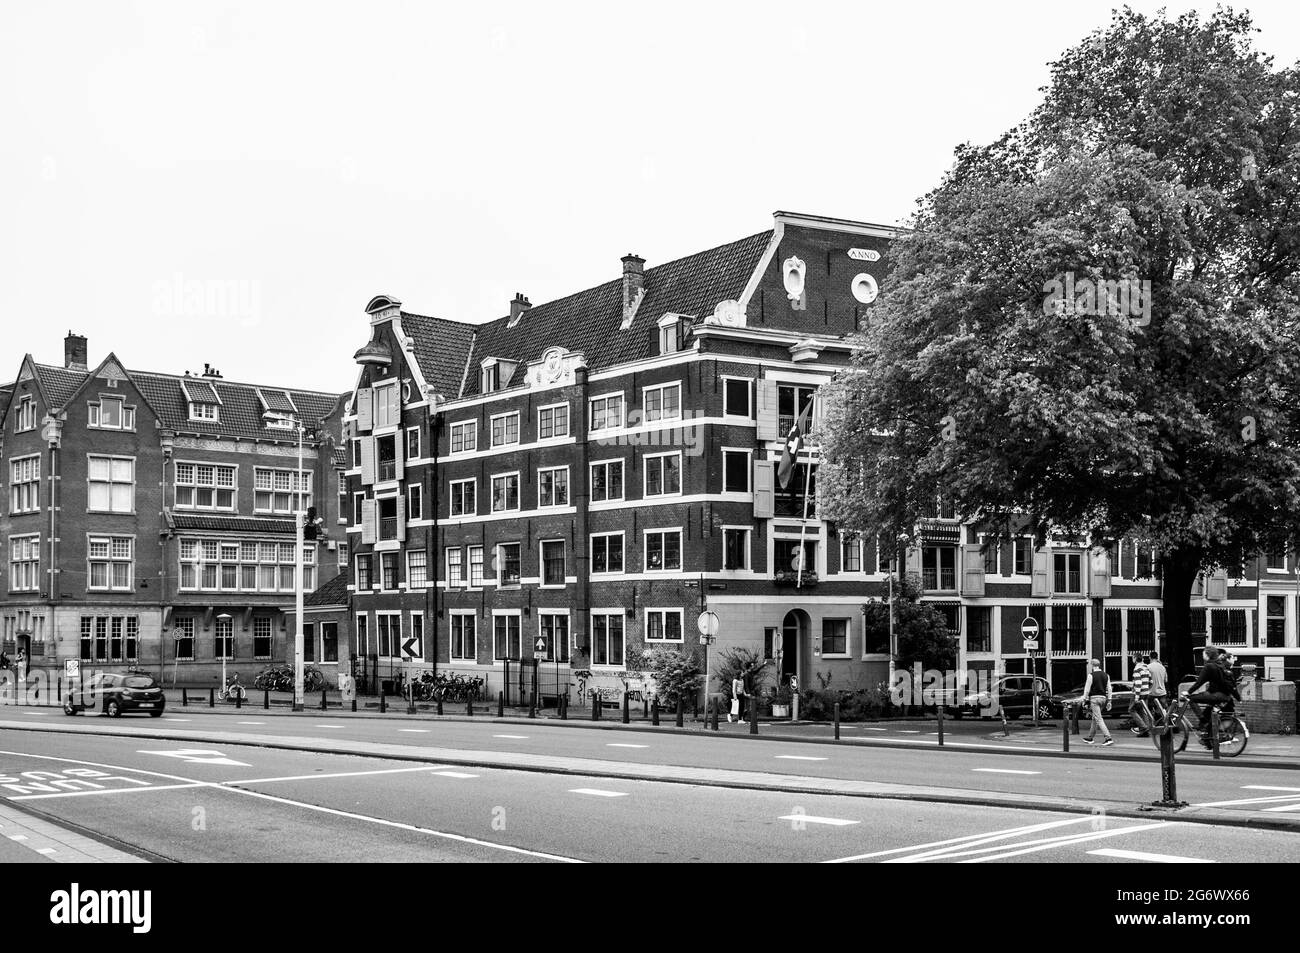 AMSTERDAM, NIEDERLANDE. 06. JUNI 2021. Schöne Fassaden der alten holländischen Gebäude. Restaurants auf der Straße. Schwarzweiß-Fotografie. Stockfoto